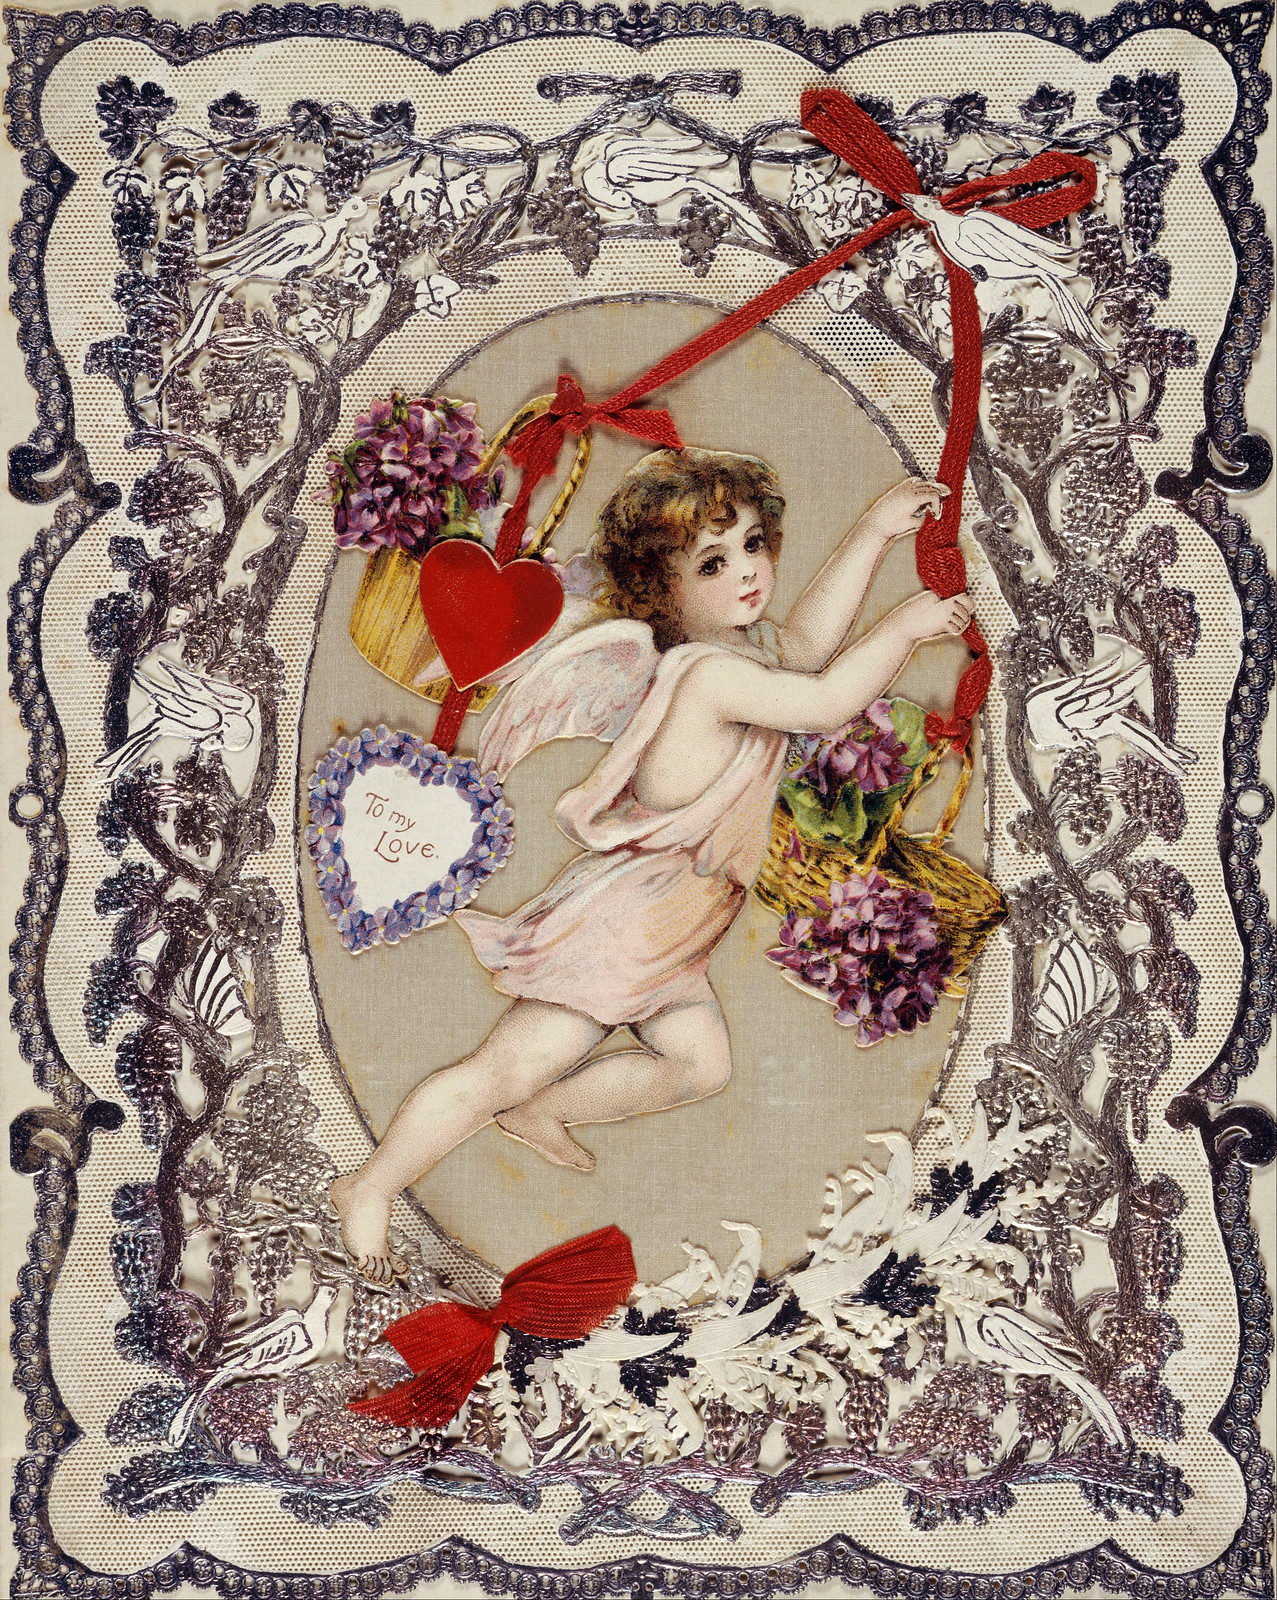 A Victorian Valentine, c. 1860-80.